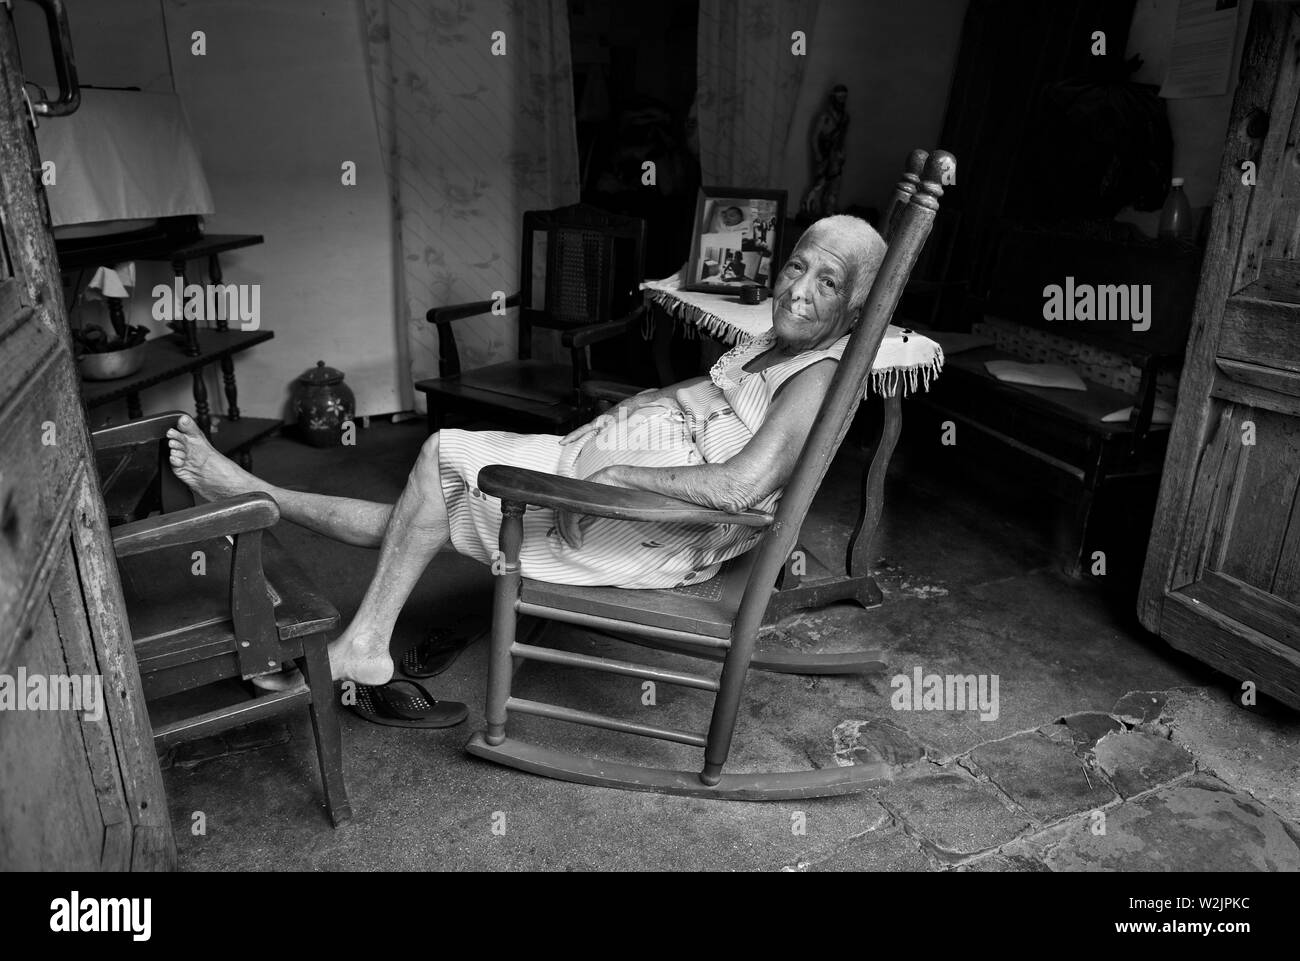 Trinidad Kuba: Die Dame ruht am Nachmittag in ihrem Schaukelstuhl, der darauf schaut, wie die Welt sie verpascht. Stockfoto